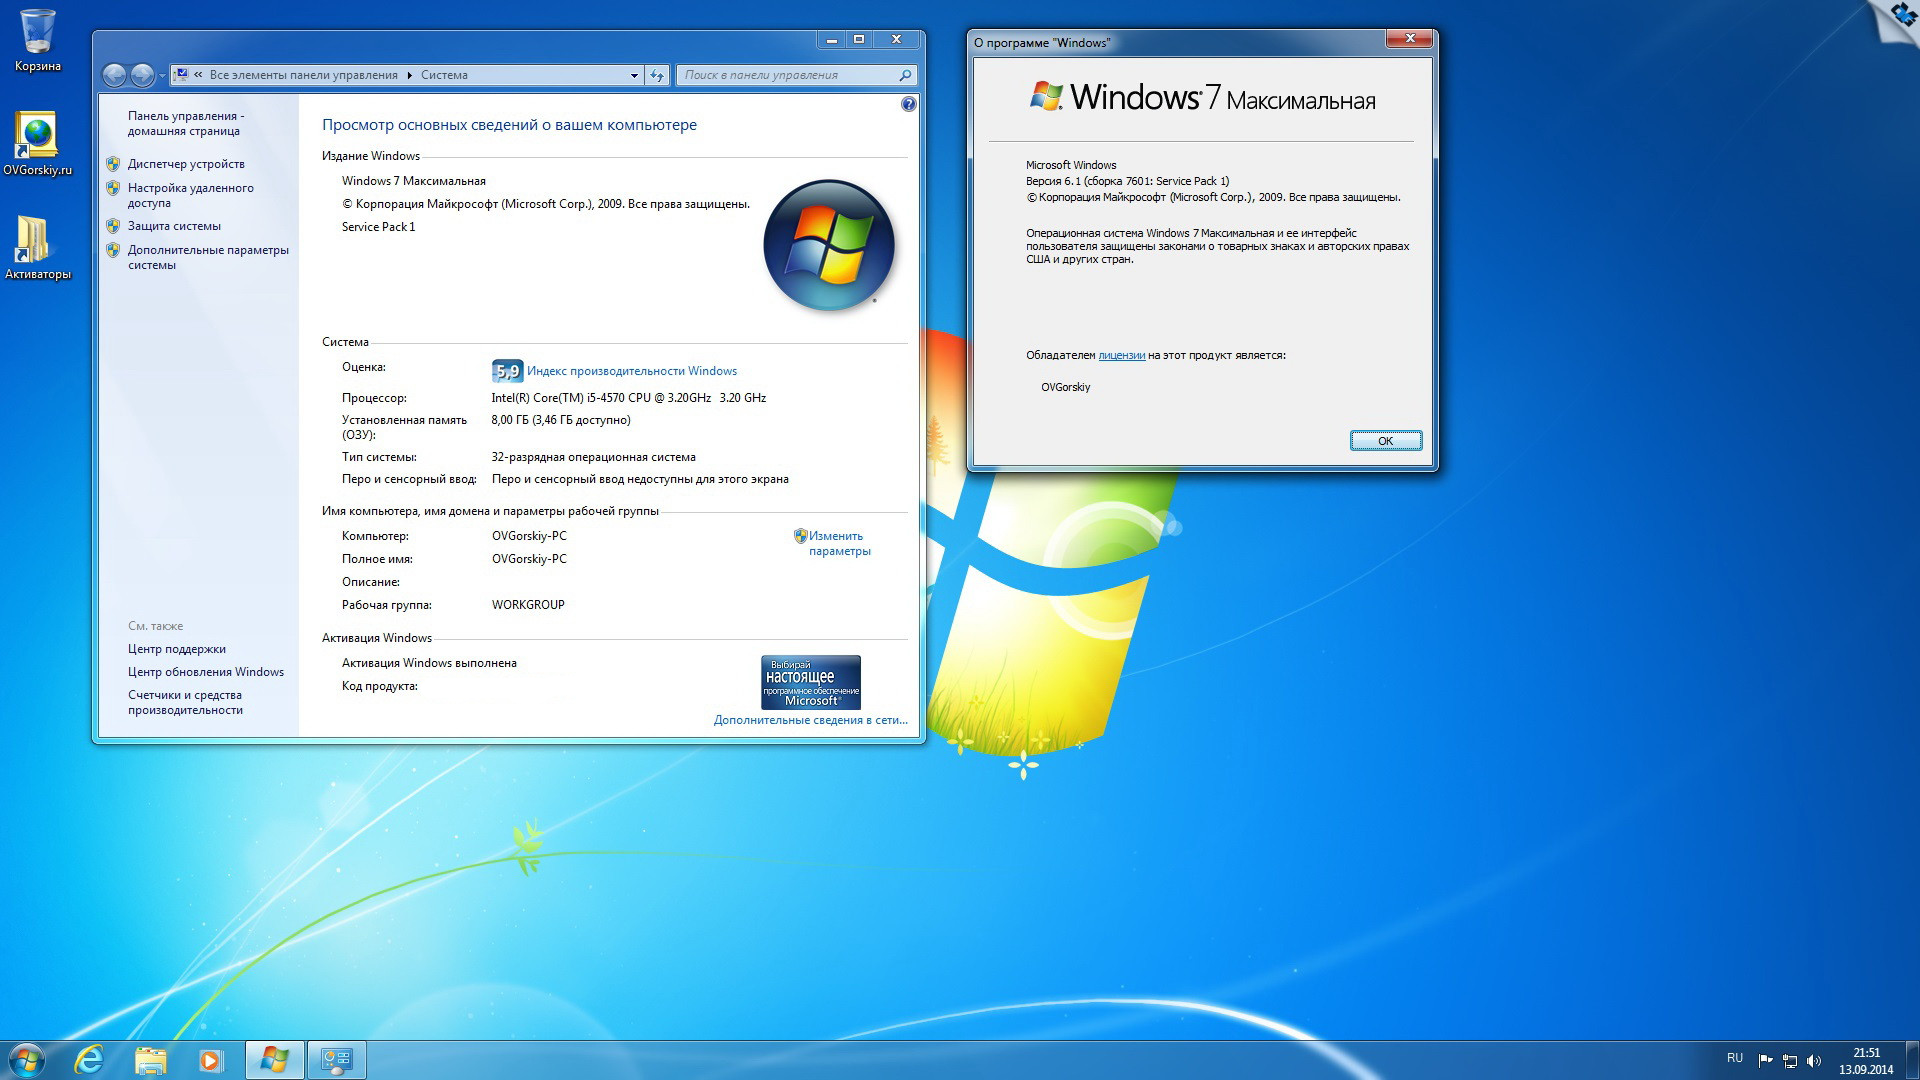 Качество windows 7. Установочный ОС Windows 7. Характеристики ОС Windows 7. Windows 7 максимальная. Windows 7 максимальная компьютер.